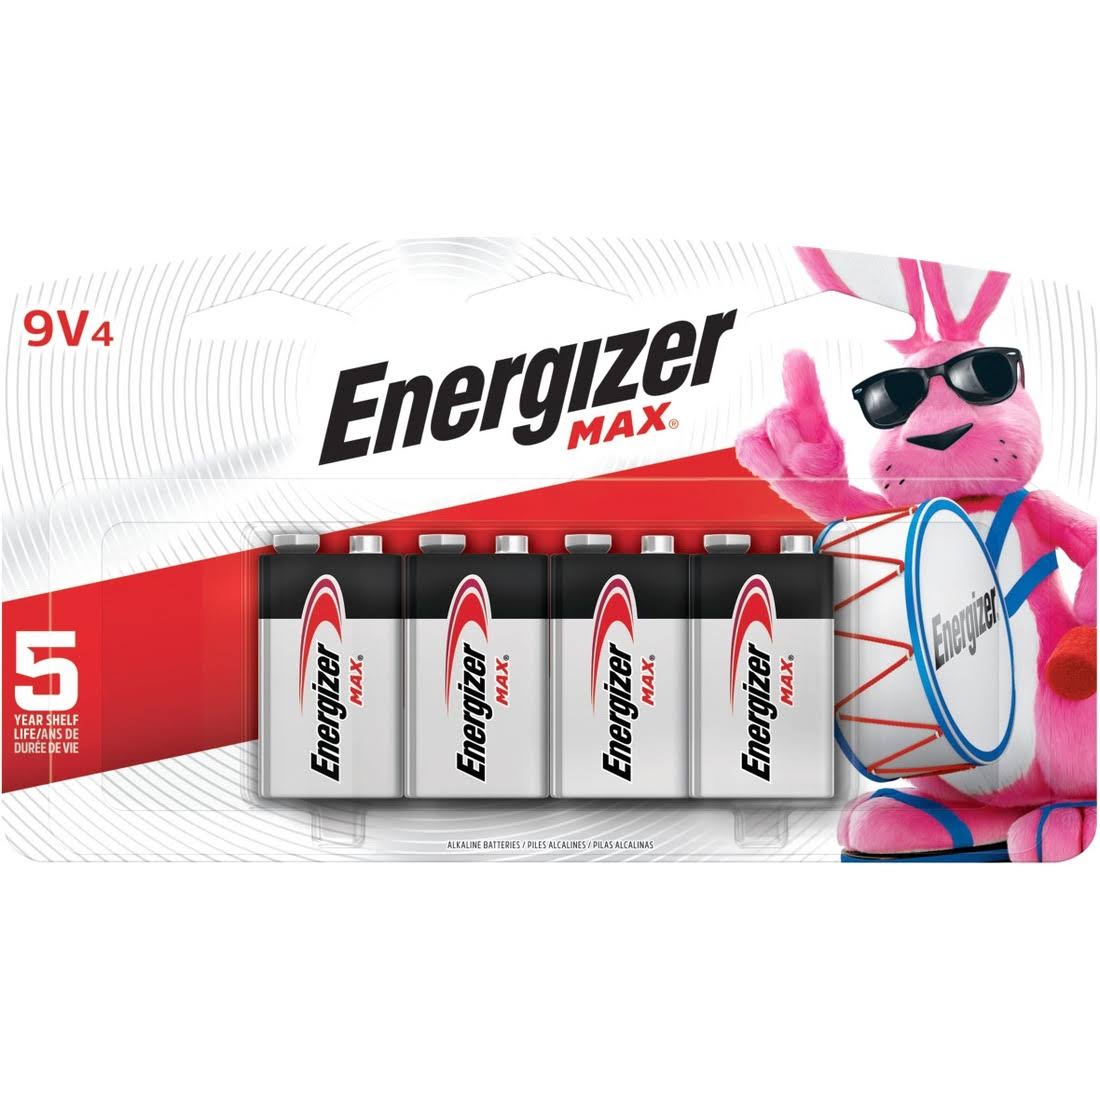 Energizer Alkaline Batteries - 9V, 4pk